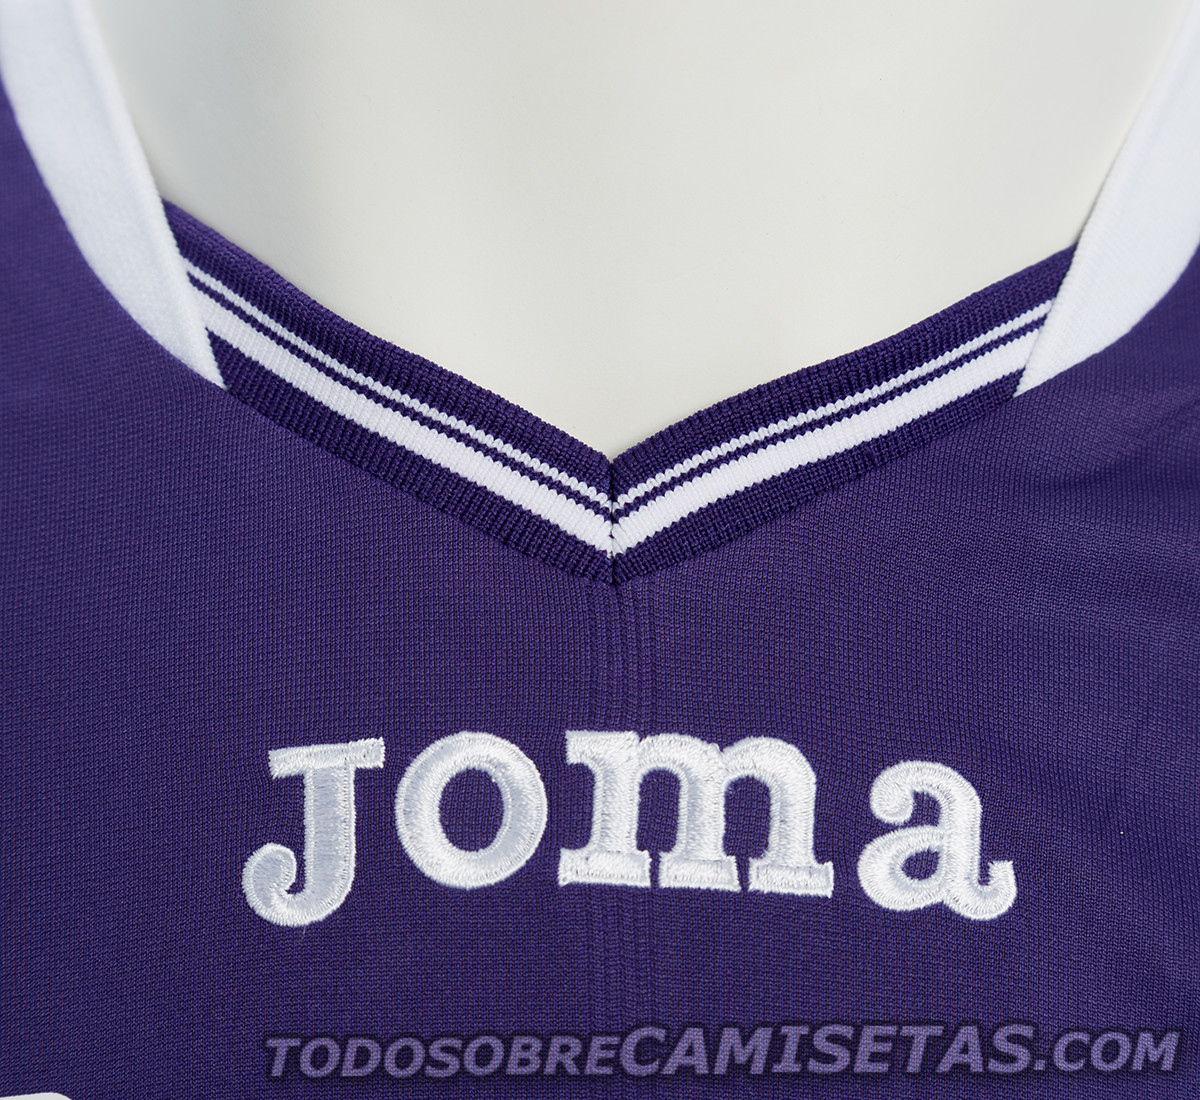 Tolouse FC Joma 2017-18 Home Kit